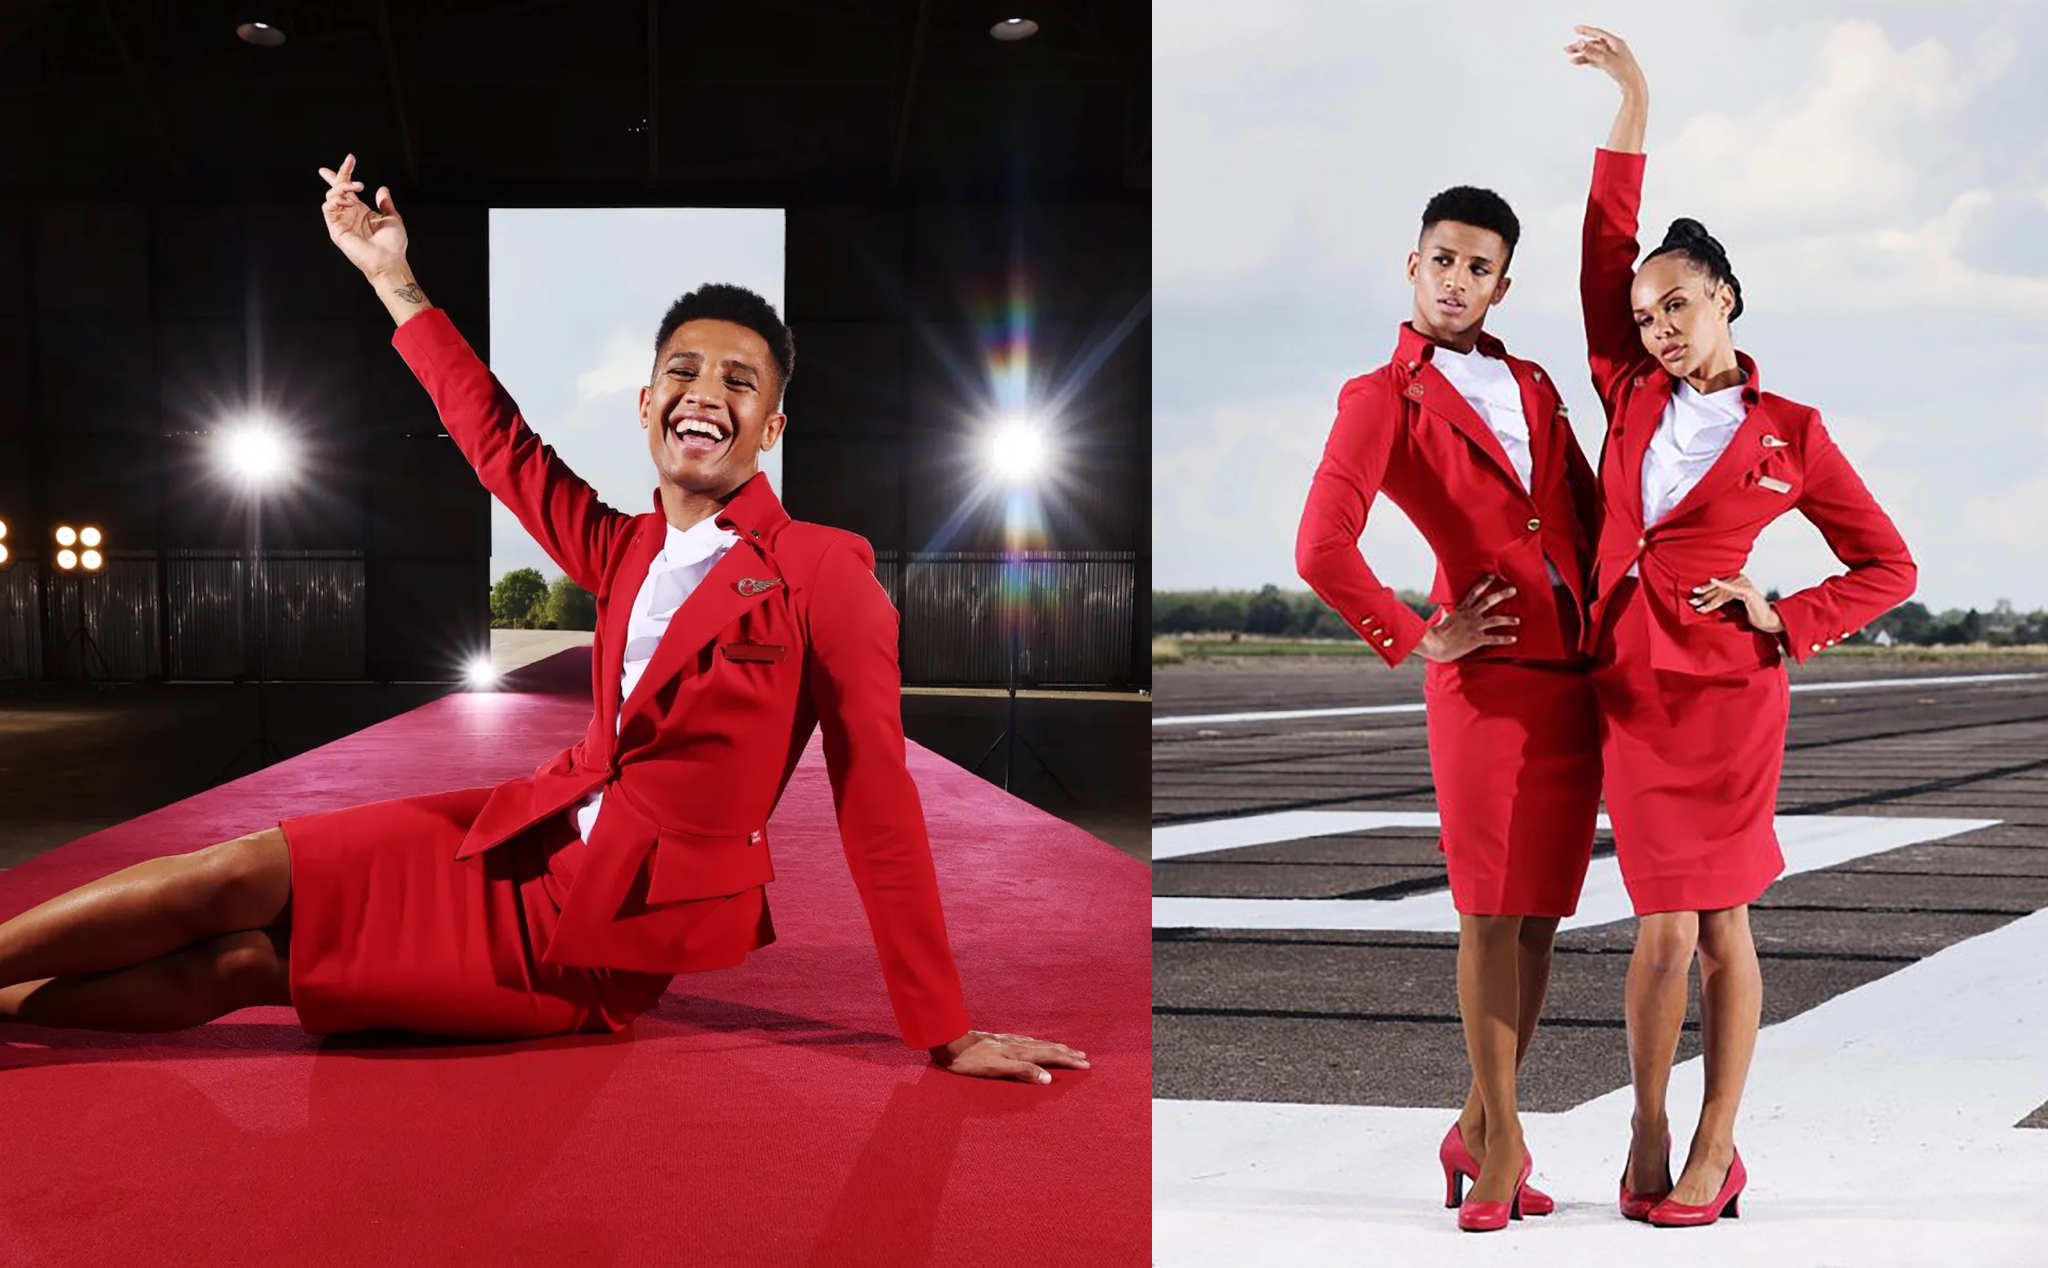 Hãng bay Virgin Atlantic cho phép tiếp viên nam mặc váy